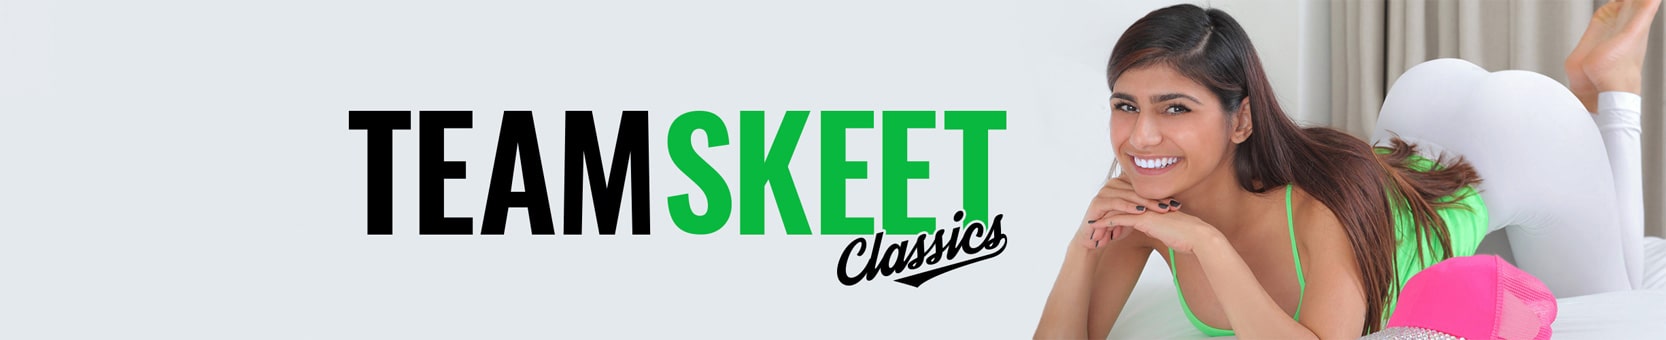 Team Skeet Classics Free Videos